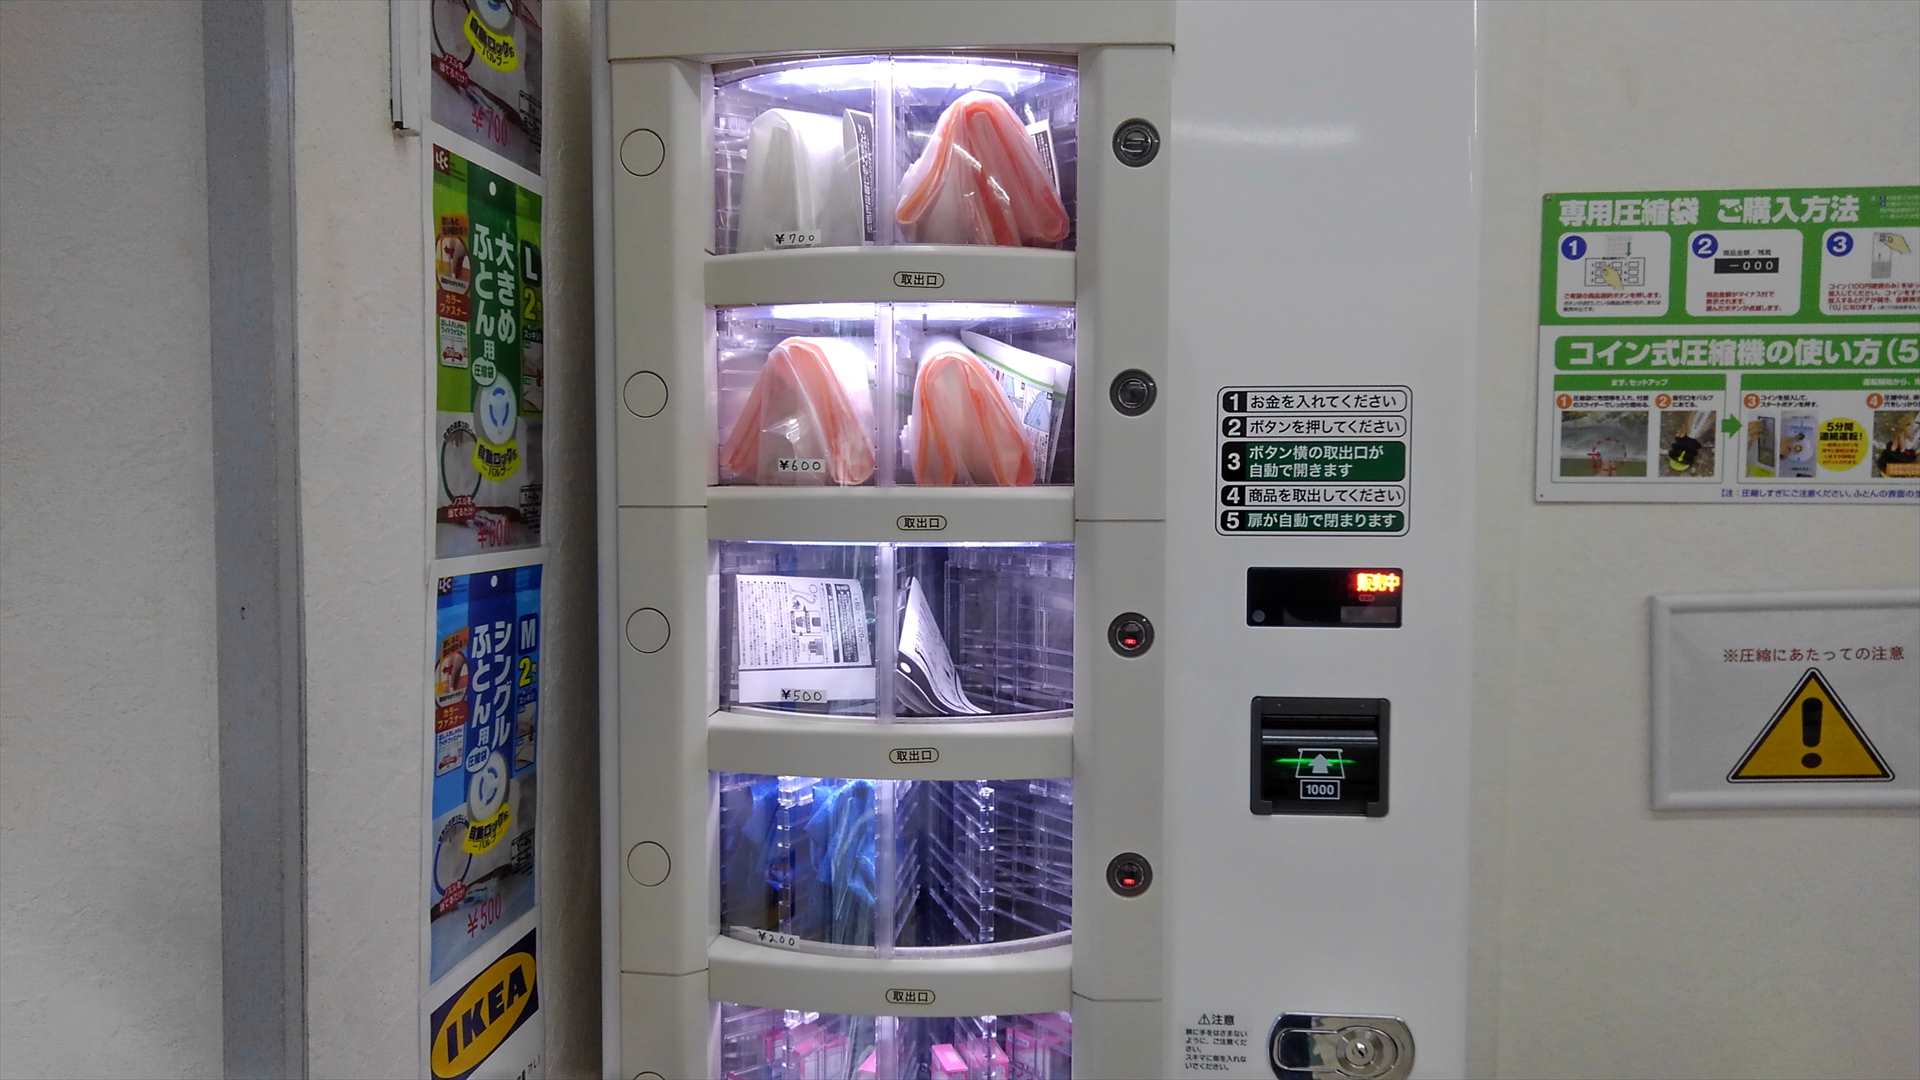 「コインランドリーどるふぃん亀戸店」のふとん圧縮袋がある自販機